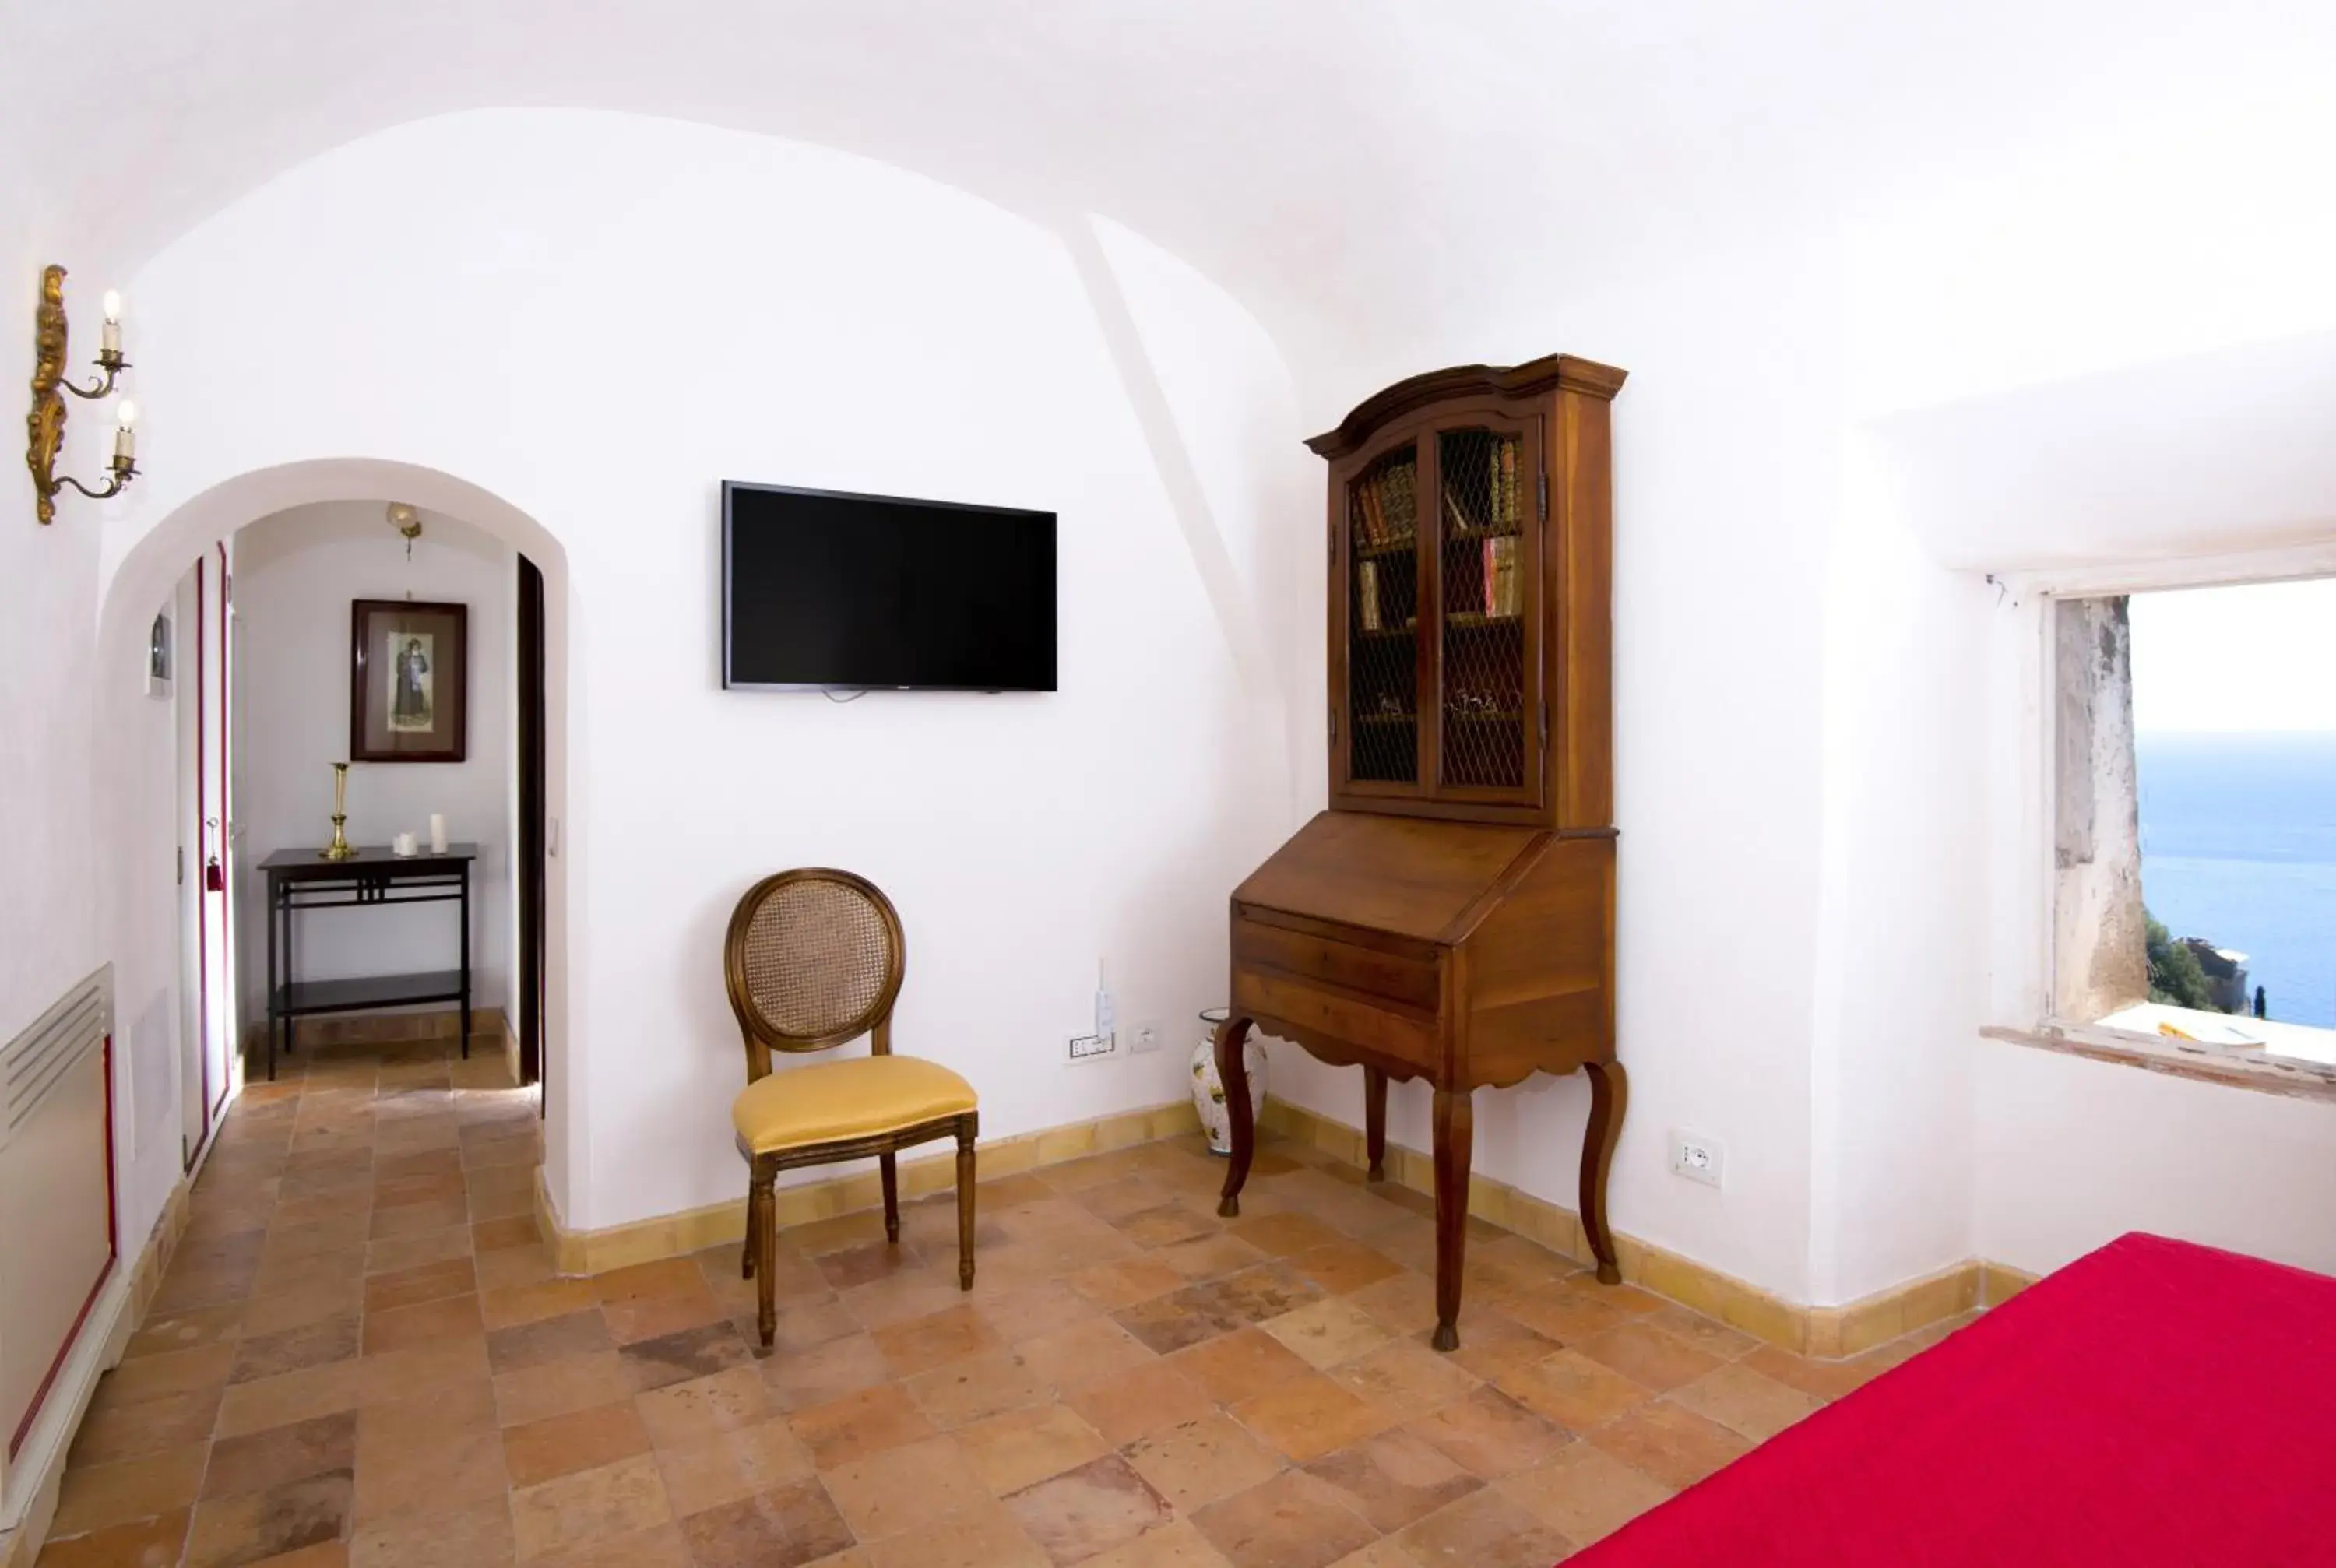 Photo of the whole room, Seating Area in Badia Santa Maria de' Olearia